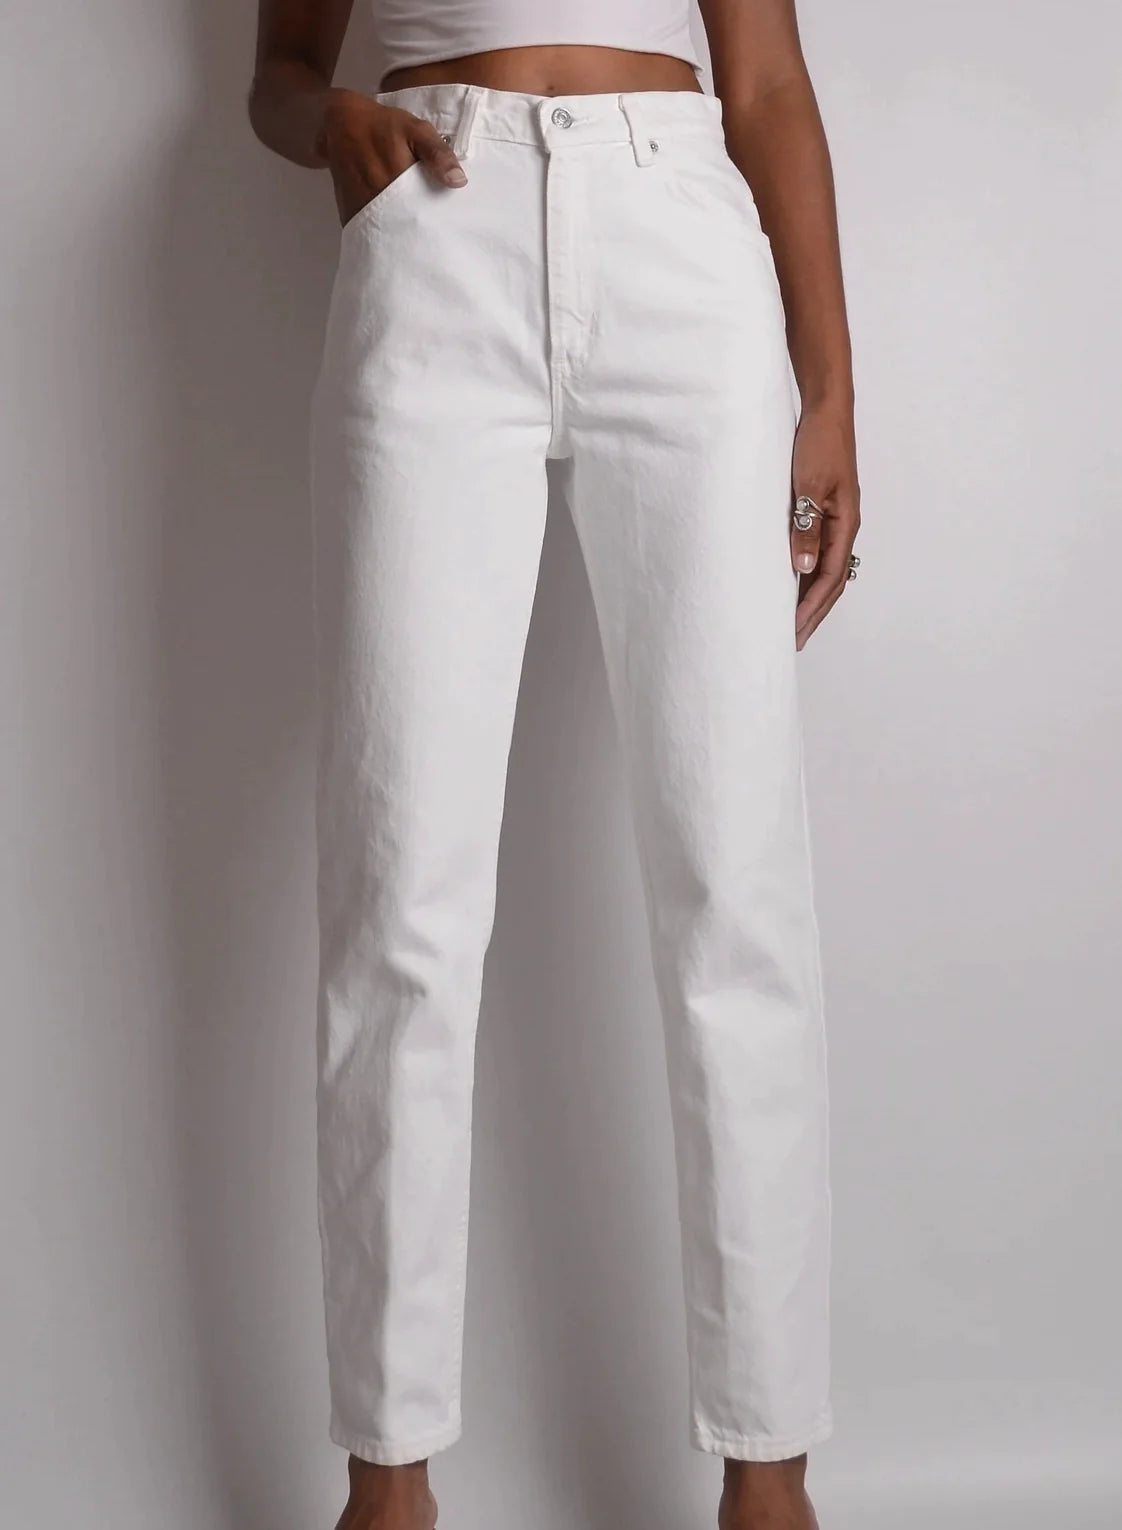 Vintage White LEVI'S Slim Fit Jeans (28"W)